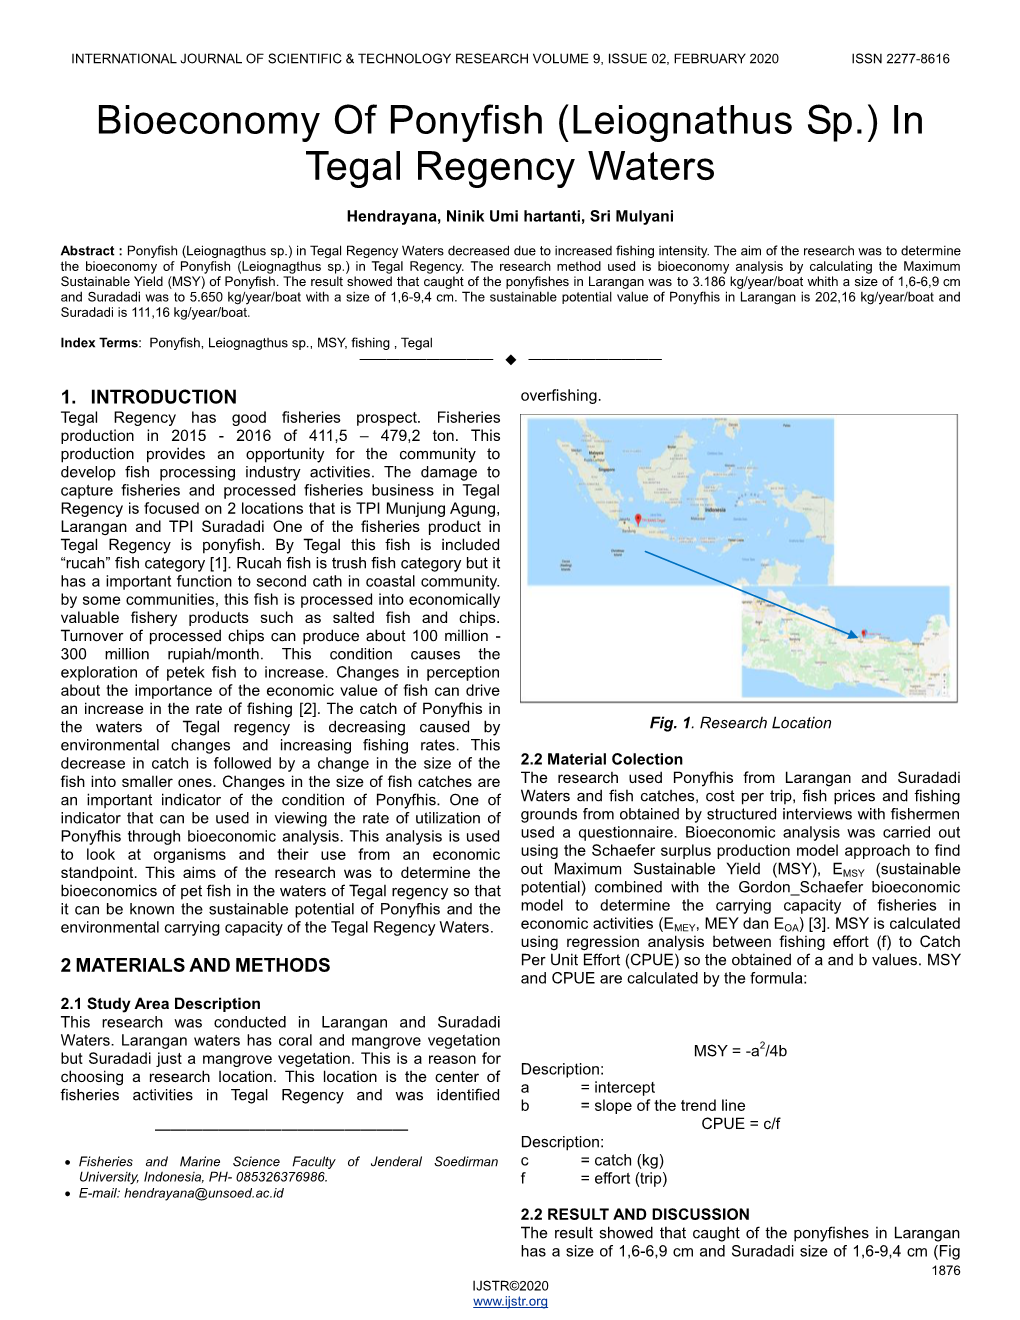 (Leiognathus Sp.) in Tegal Regency Waters